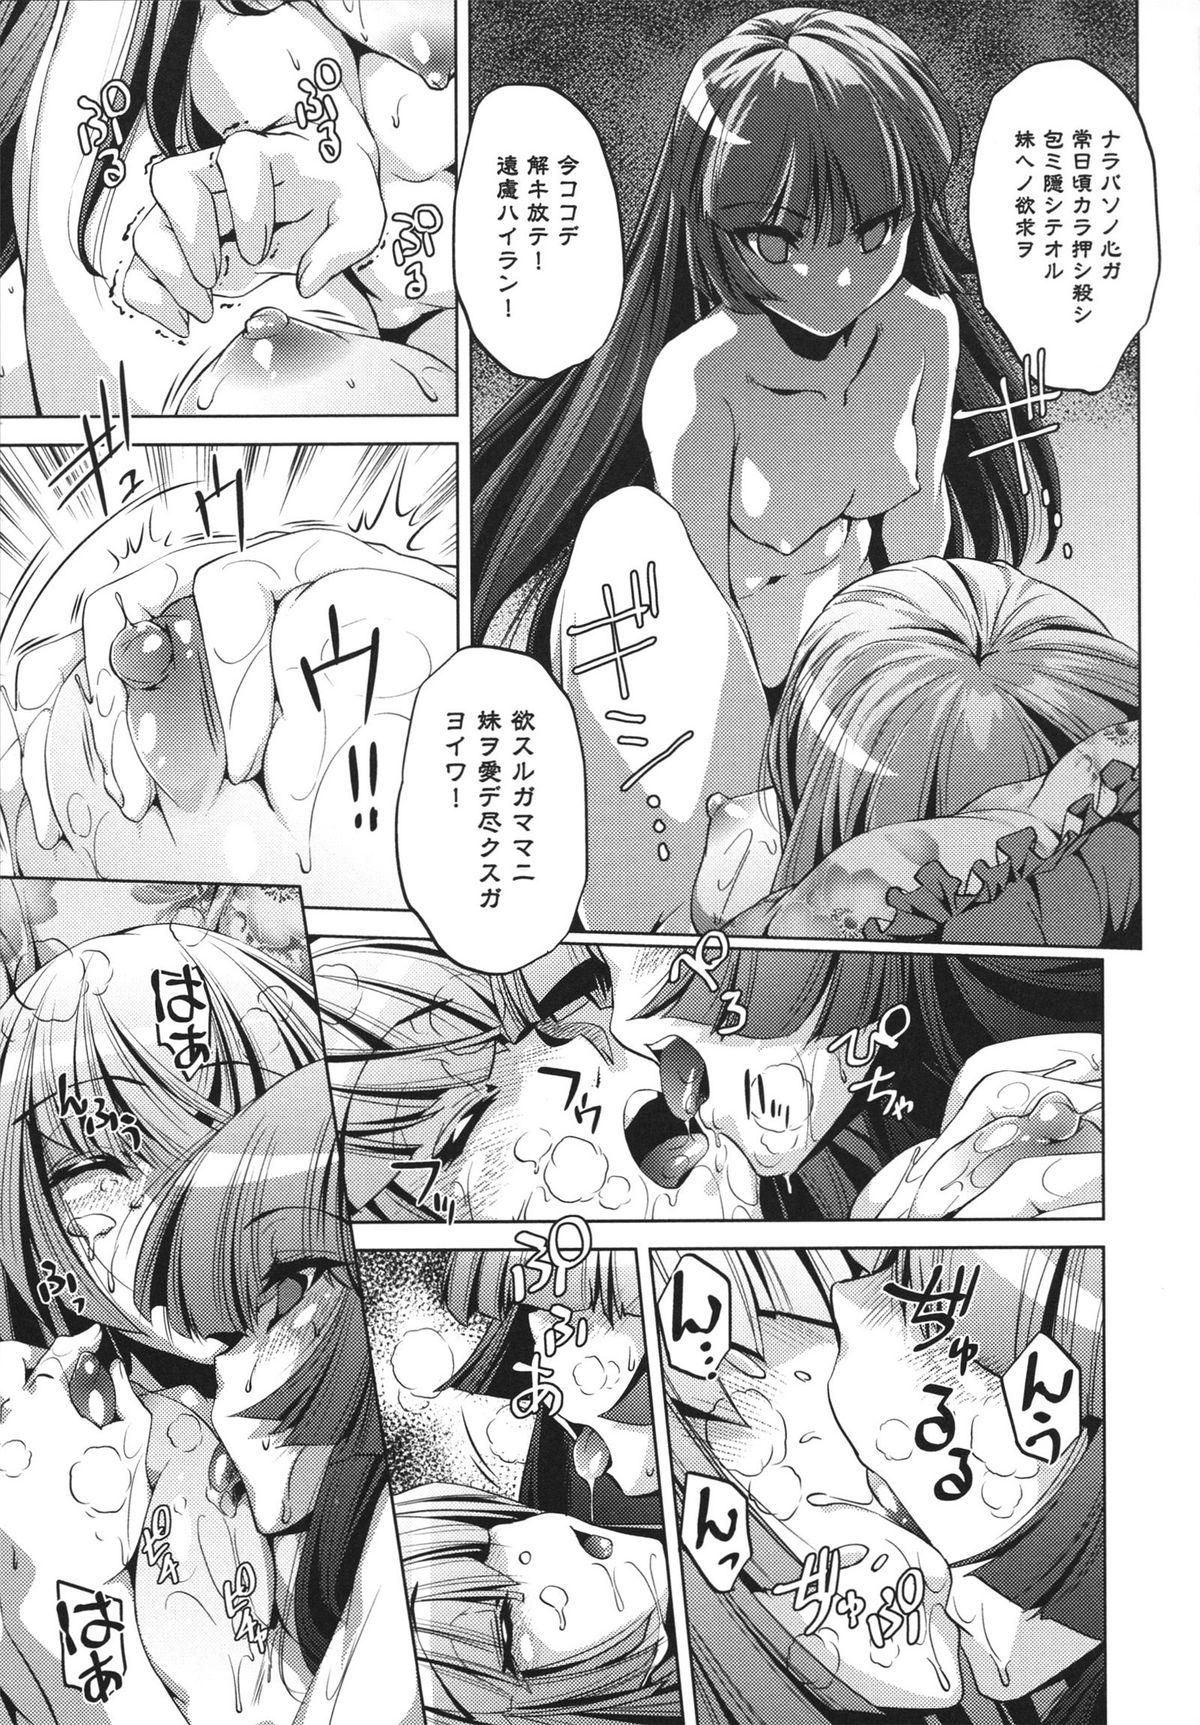 [Ootori Ryuuji] Shokushu wa Yawarakana Chibusa ni Makitsuki Onna-tachi no Ana wo Kakimidasu - Feeler coils around a soft breast and violates women's hole. 64